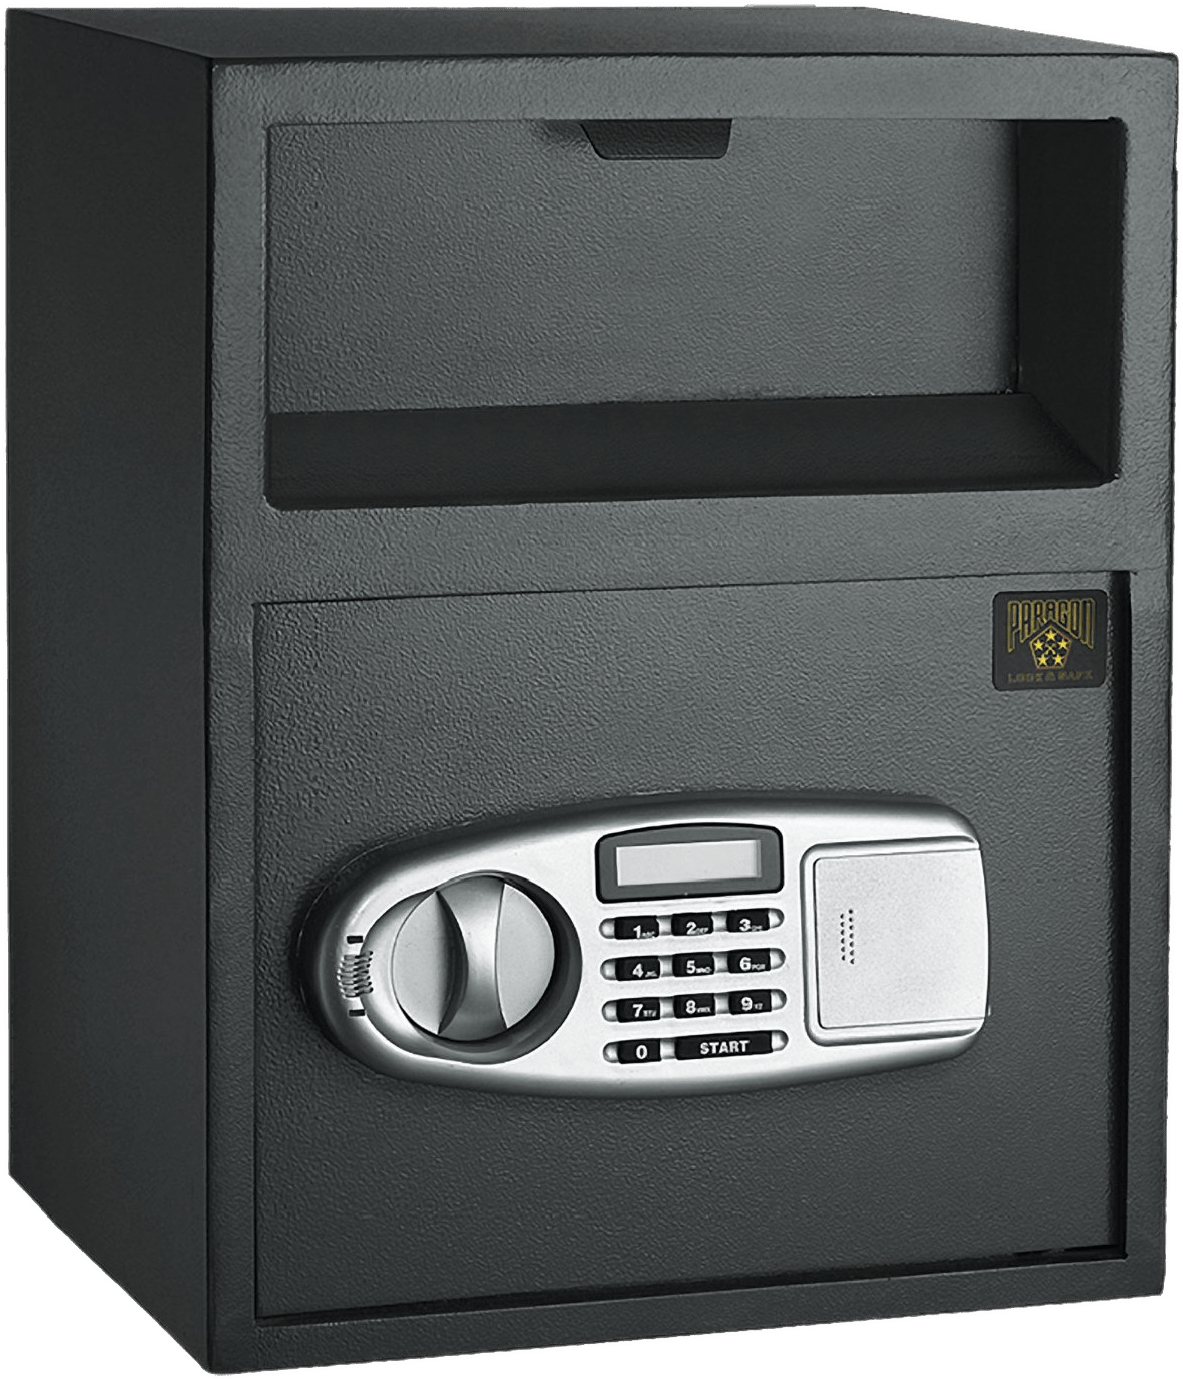 Digital Security Safe Box PNG image